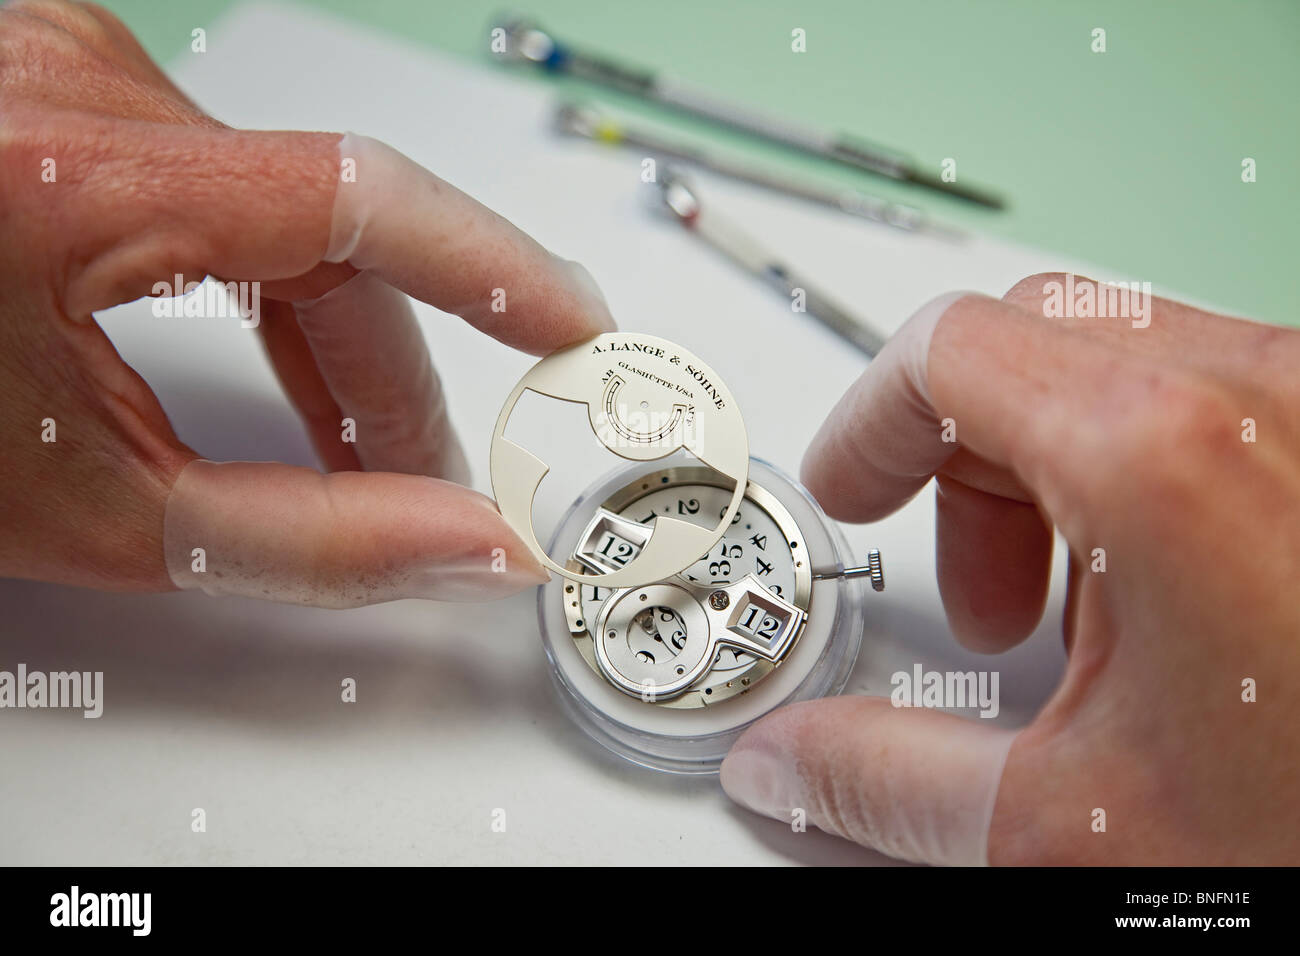 Lange und Soehne GmbH: fabbricazione e per i preziosi orologi in Glashuette, Germania Foto Stock